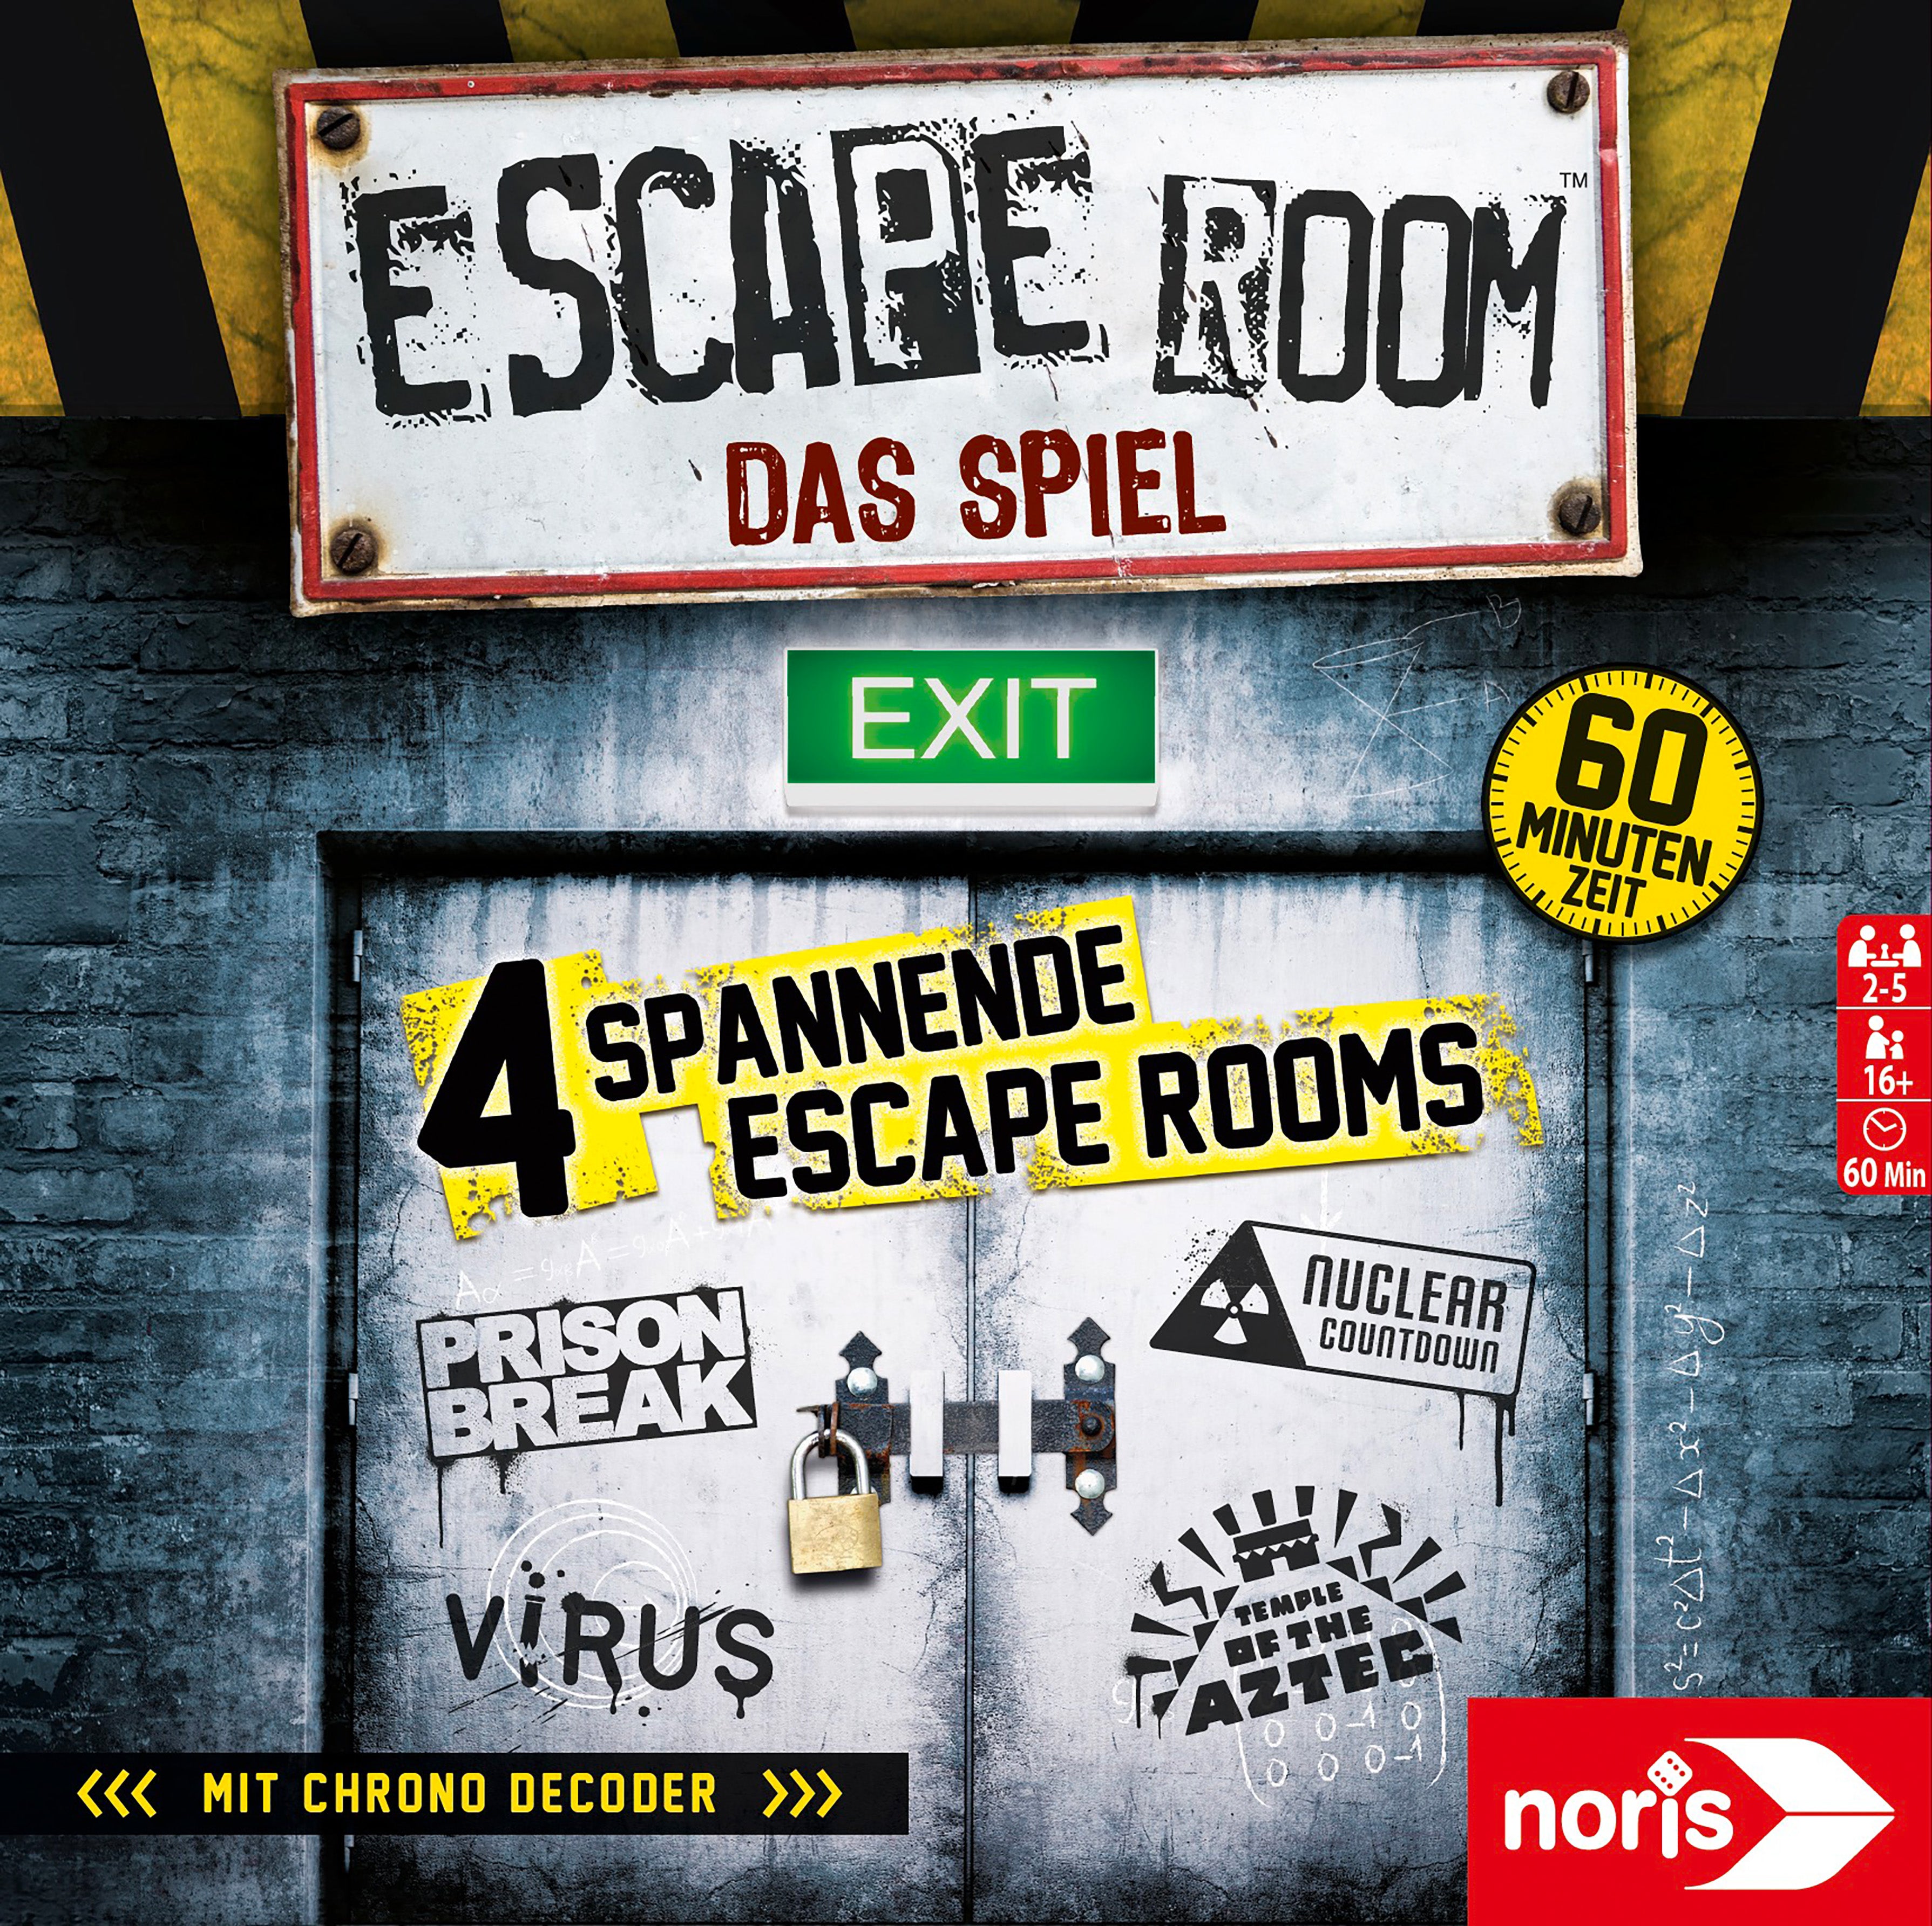 Noris - Escape Room The Game